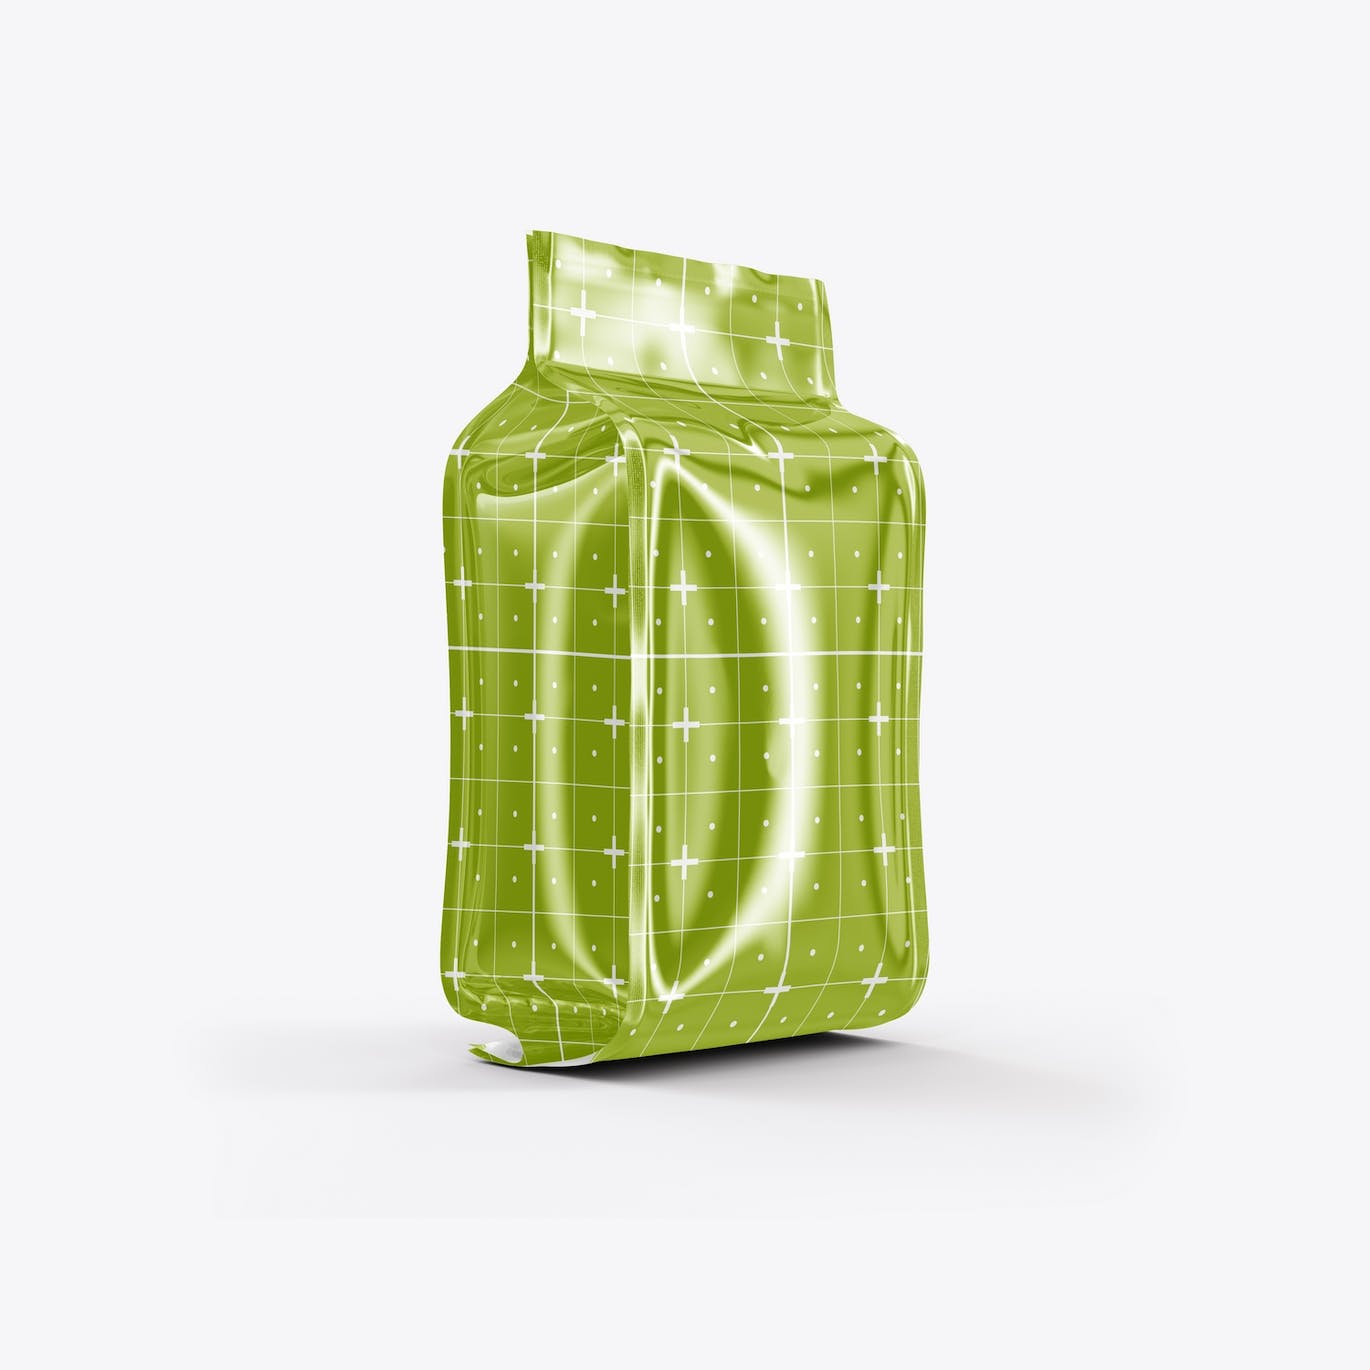 光滑的塑料纸咖啡袋包装设计样机图 Set Glossy Plastic Paper Coffee Bag Mockup 样机素材 第4张